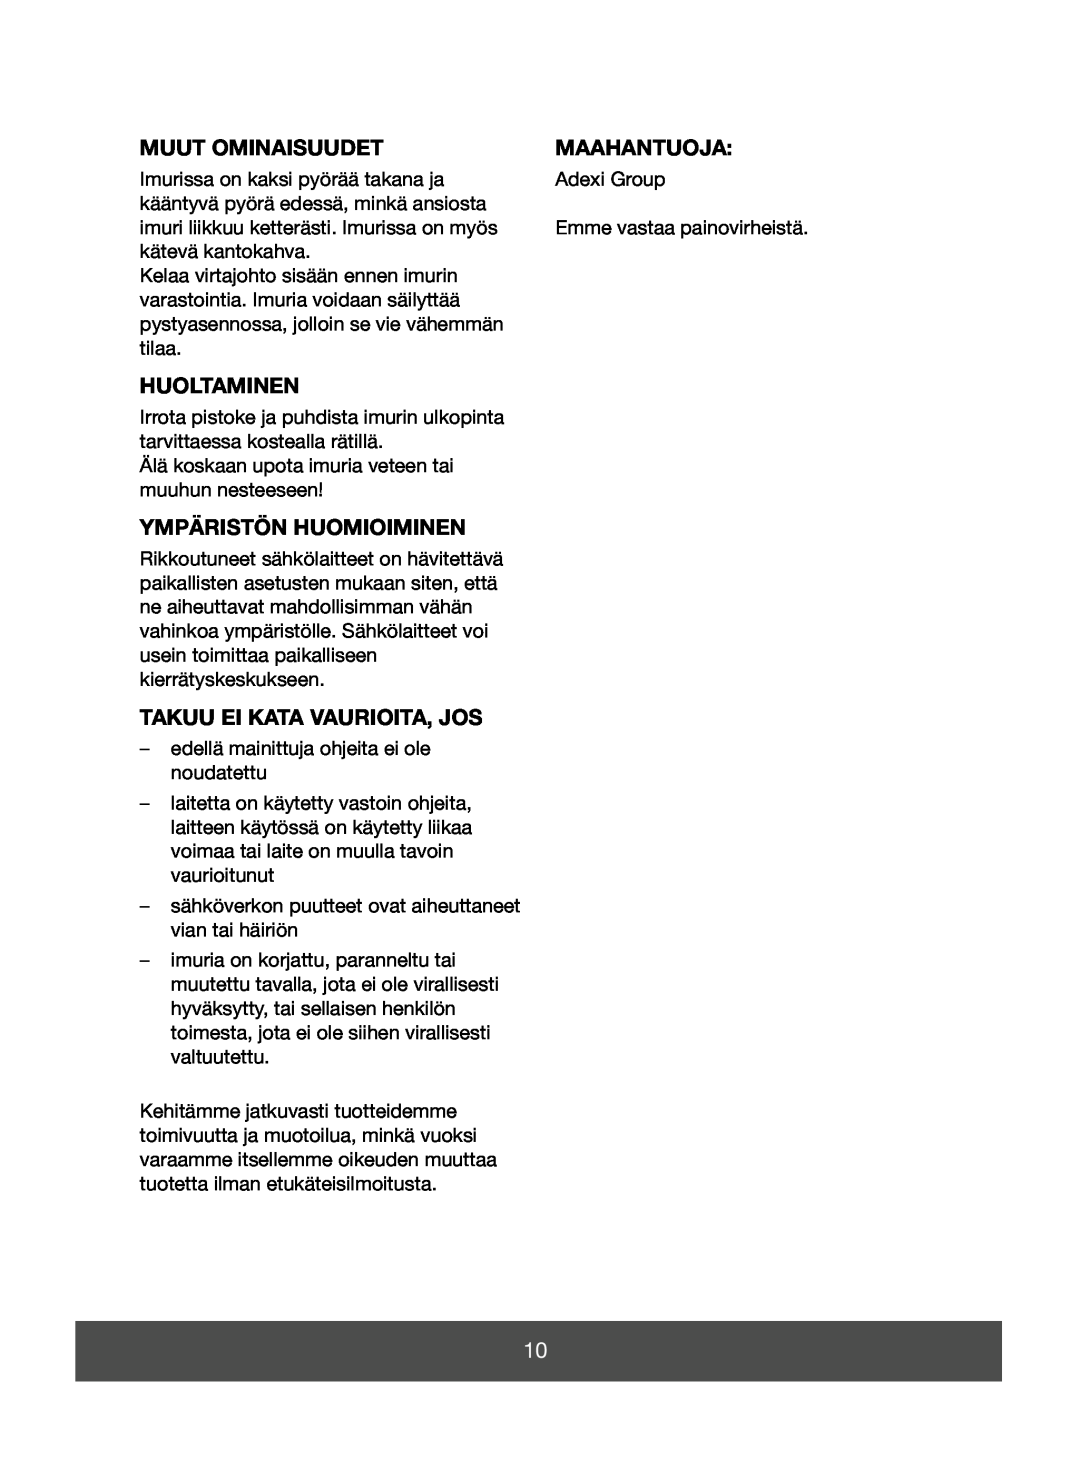 Melissa 640-123 manual Muut Ominaisuudet, Maahantuoja, Huoltaminen, Ympäristön Huomioiminen, Takuu Ei Kata Vaurioita, Jos 